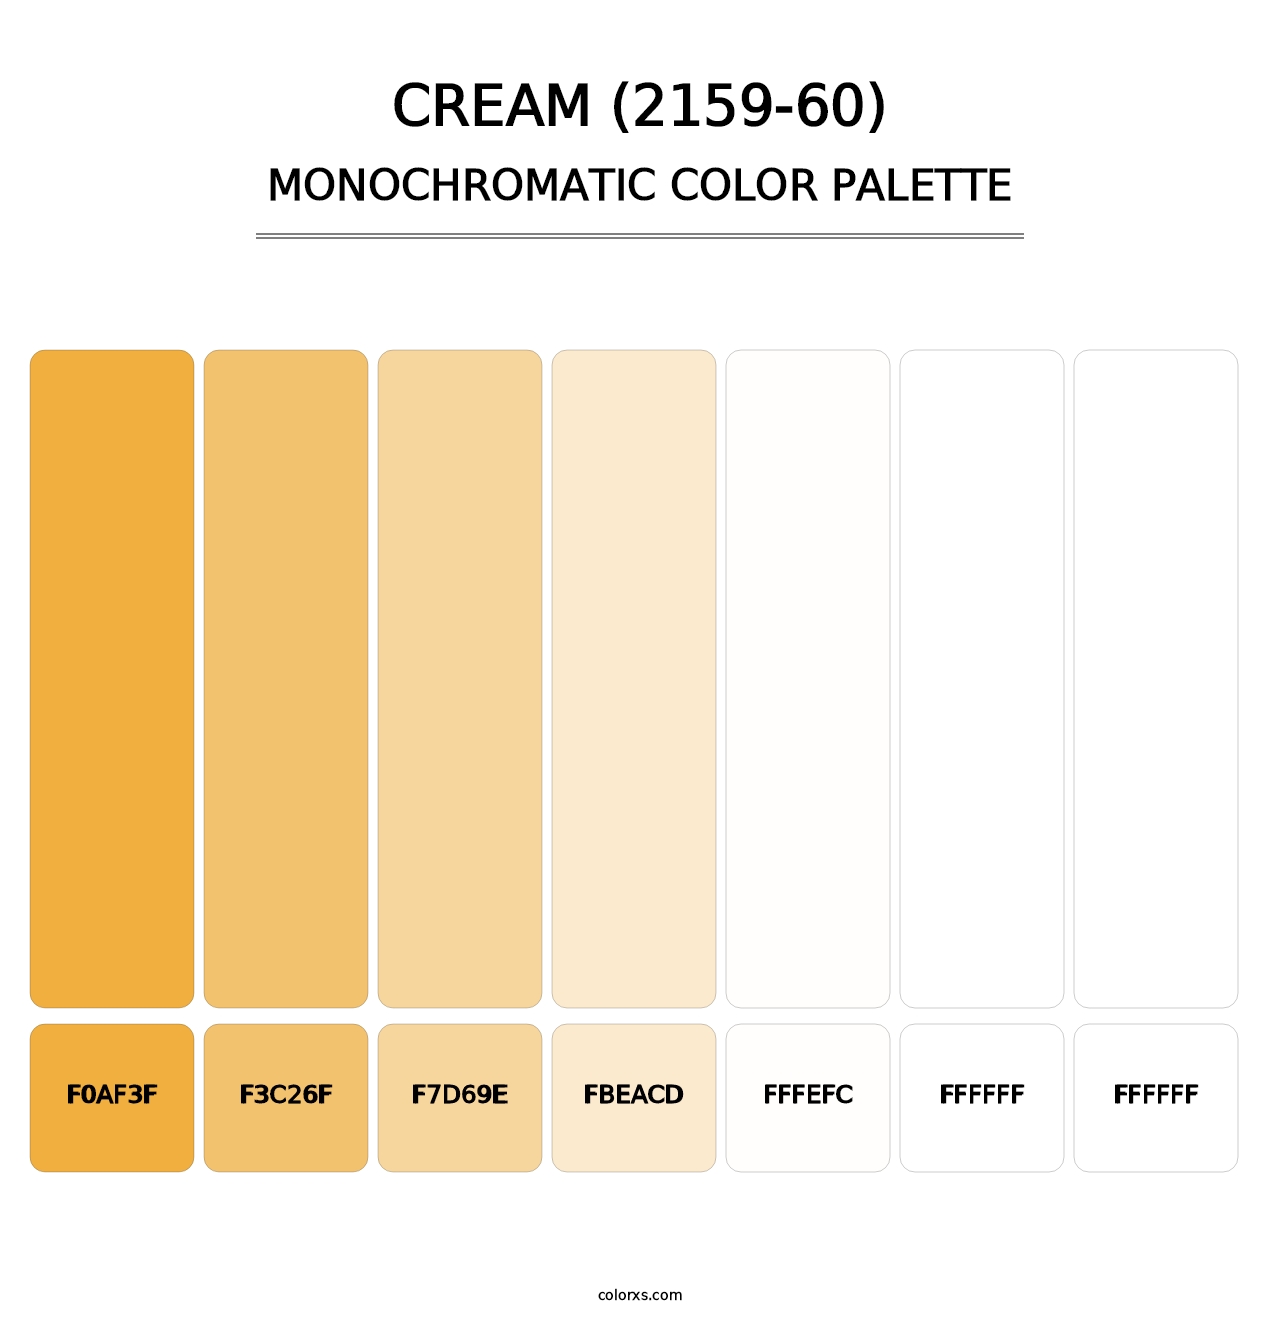 Cream (2159-60) - Monochromatic Color Palette